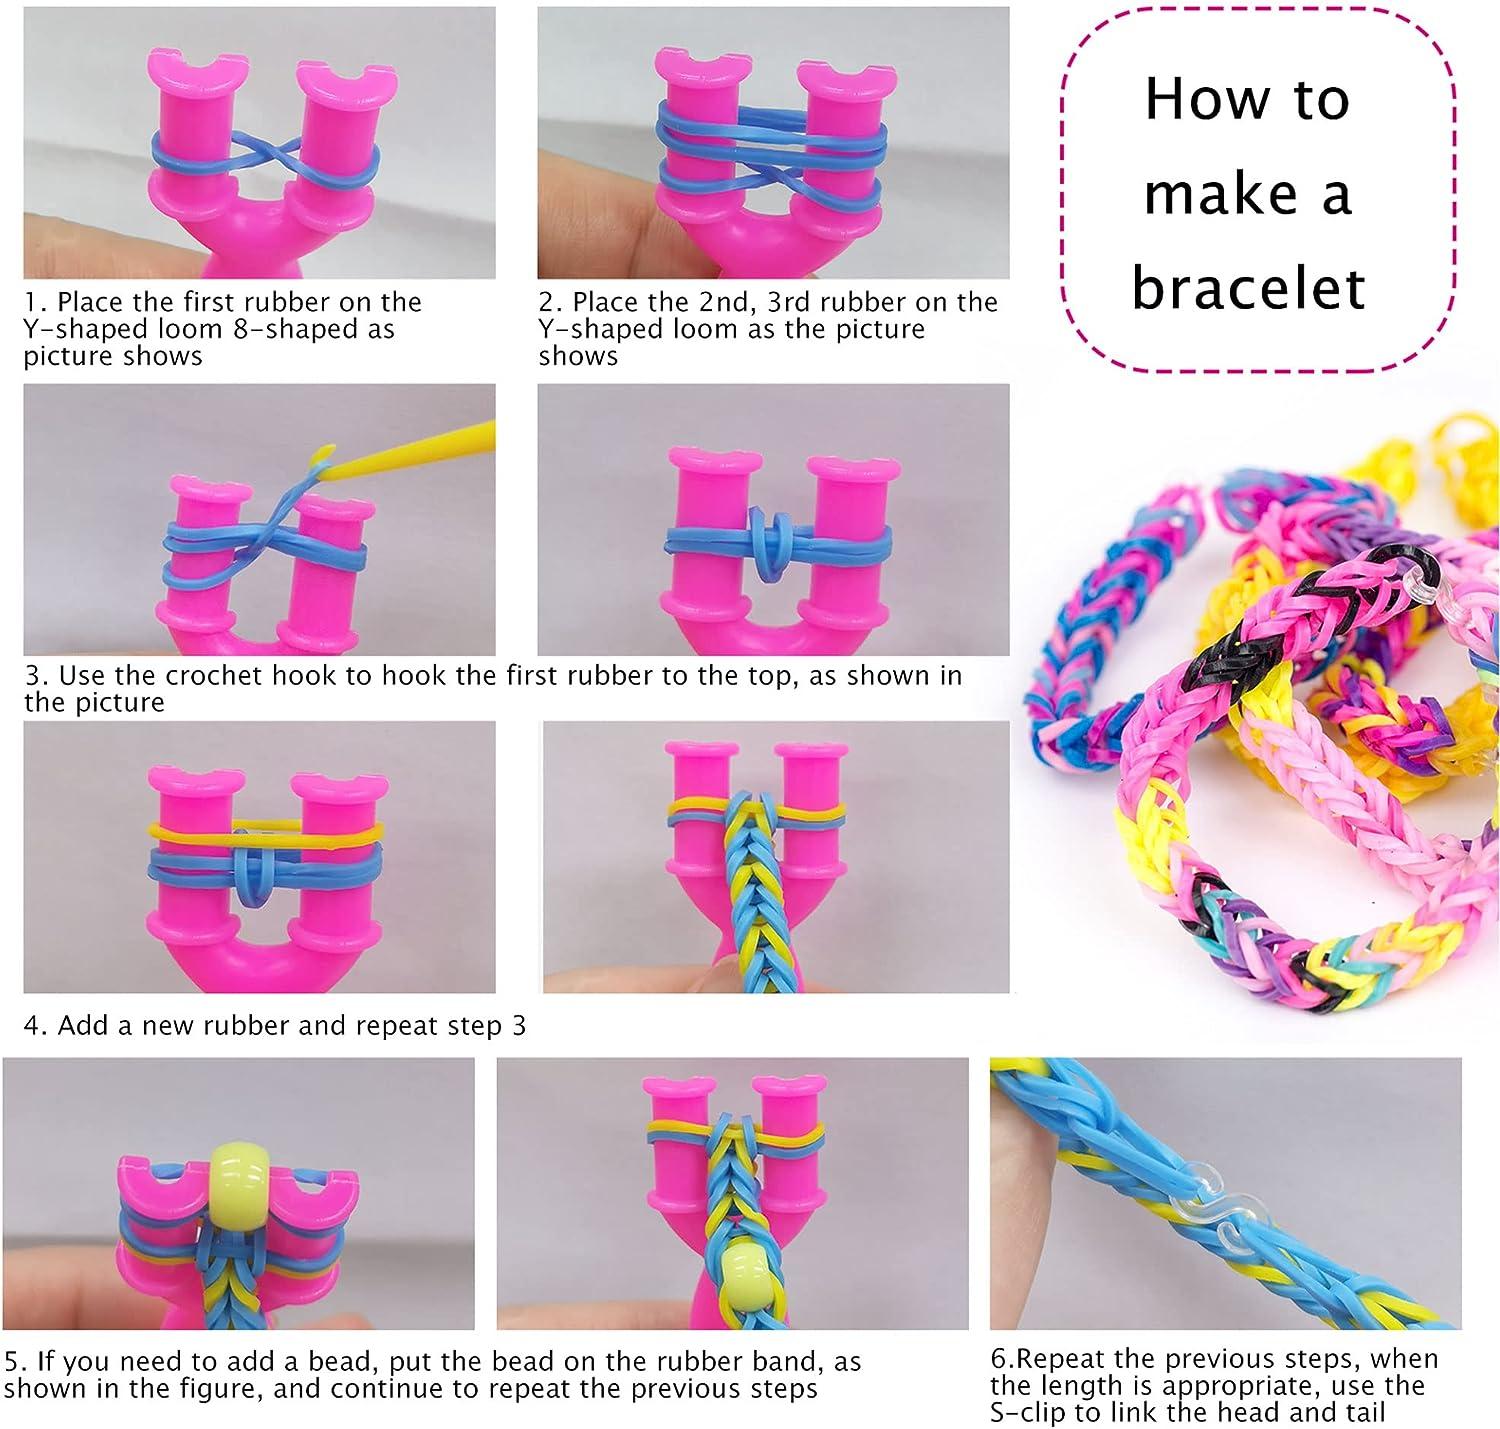 VENSEEN Rubber Band Bracelet Kit, 12000+ Loom Bracelet Making Kit